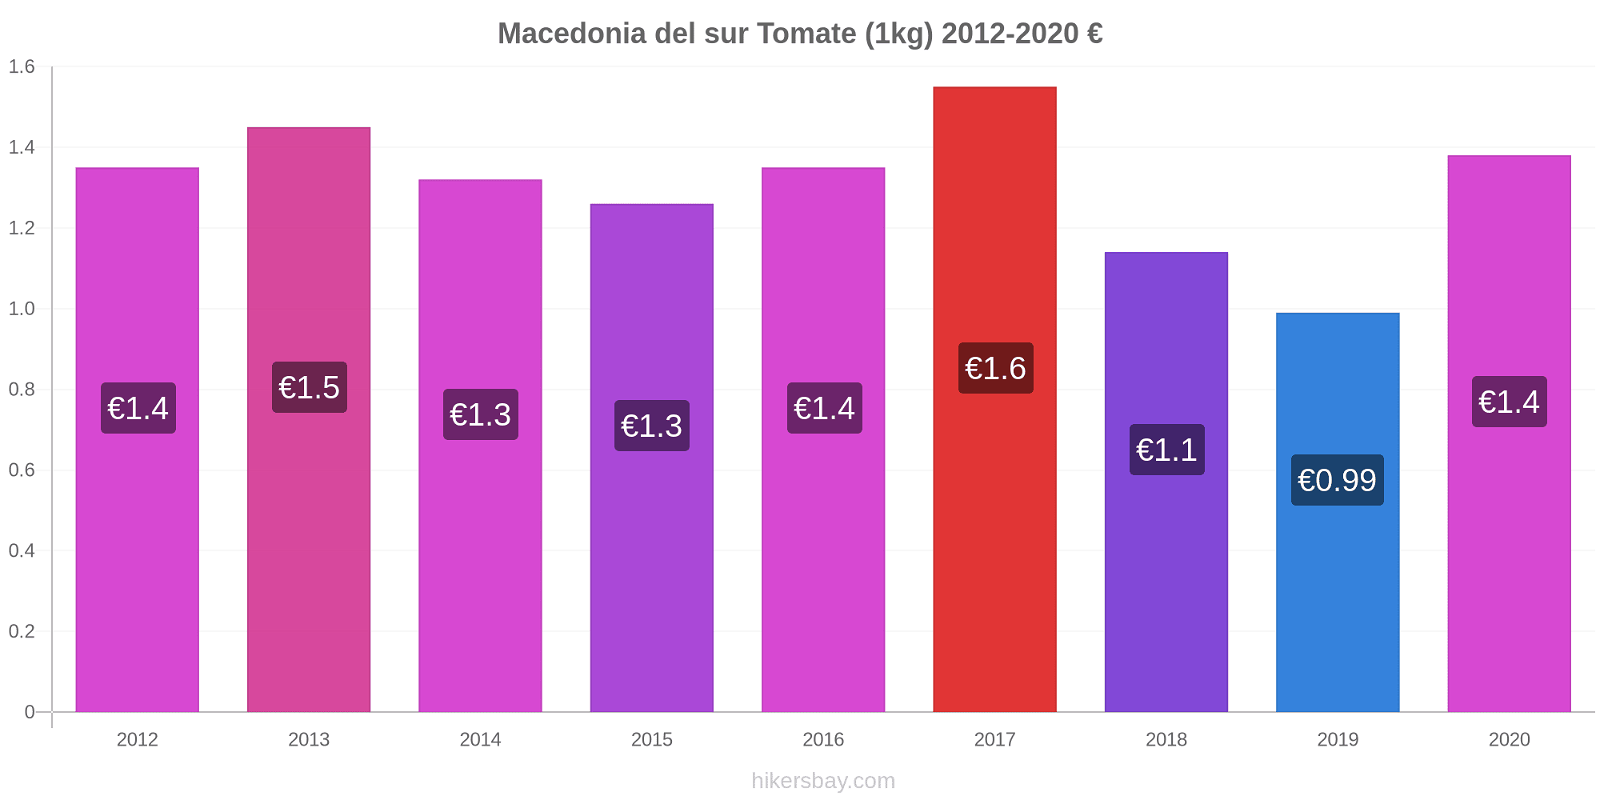 Macedonia del sur cambios de precios Tomate (1kg) hikersbay.com